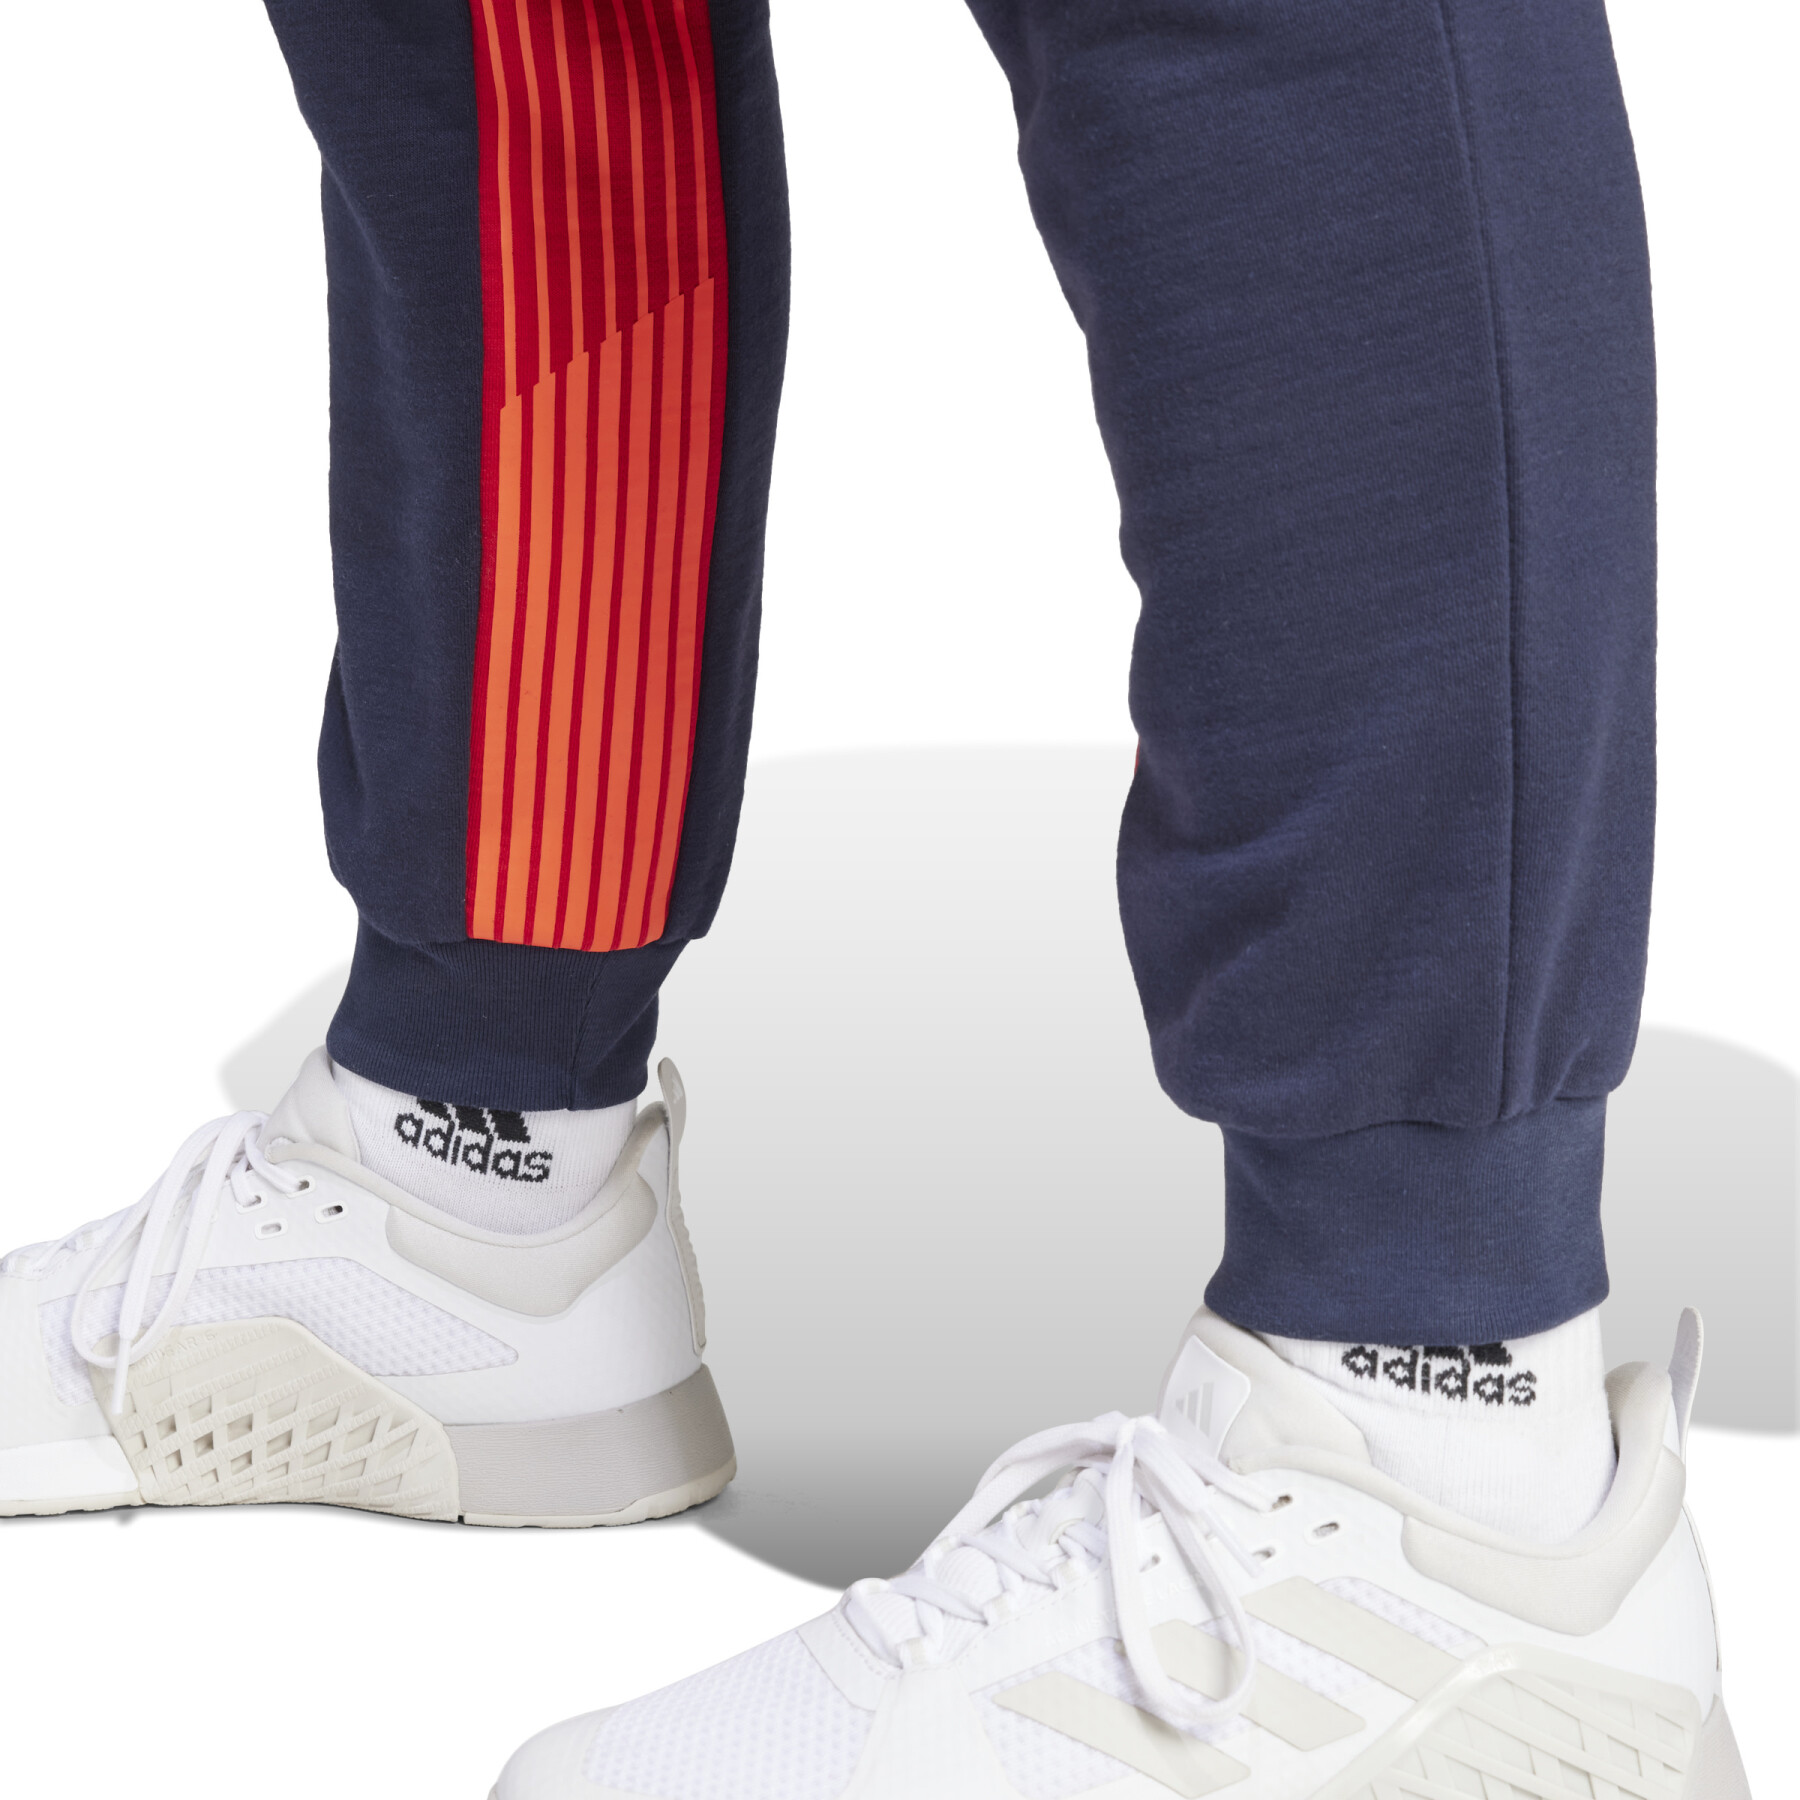 Pantaloni cargo da donna adidas Team GB Dance